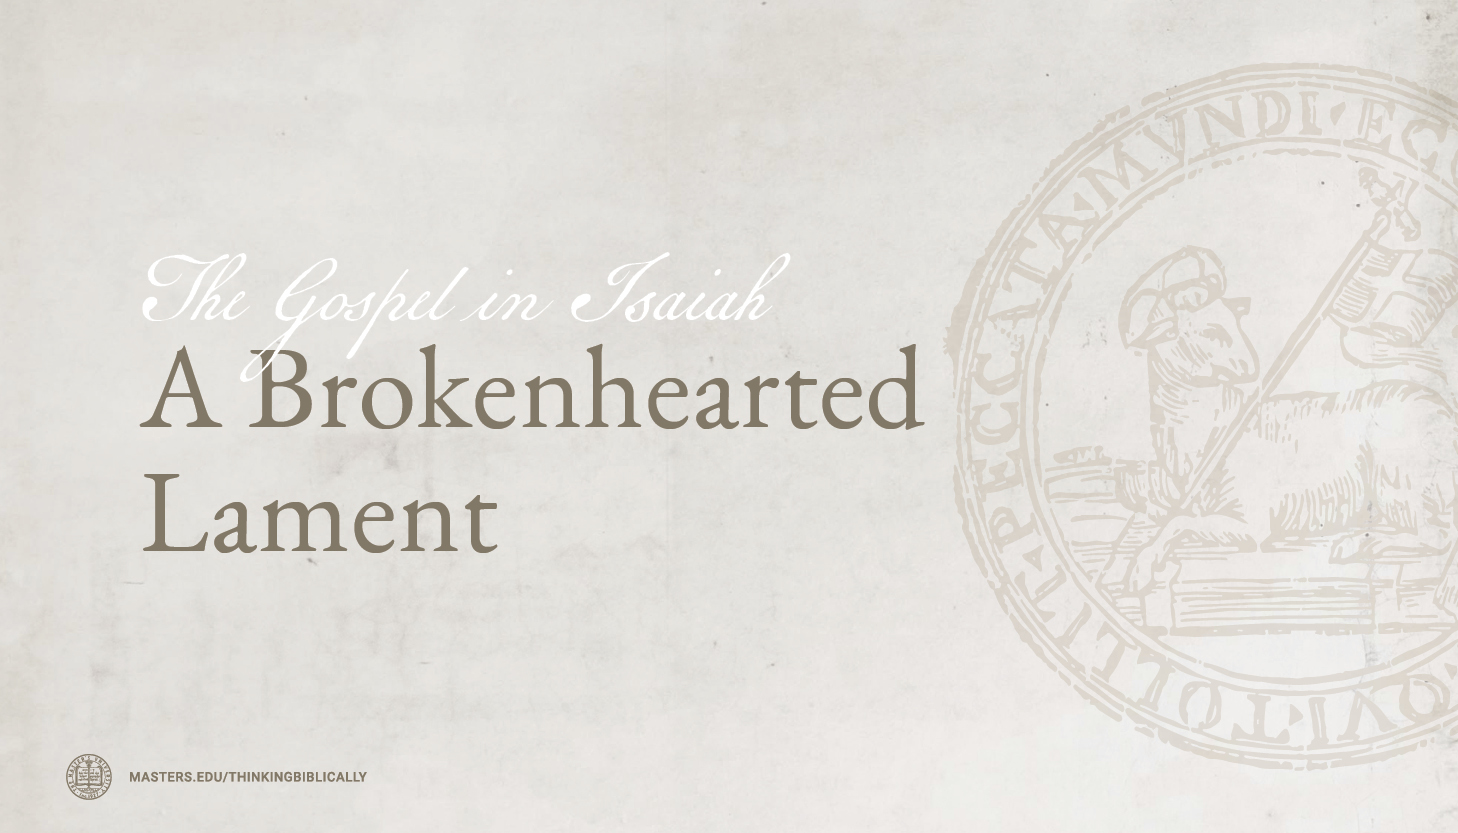 A Brokenhearted Lament